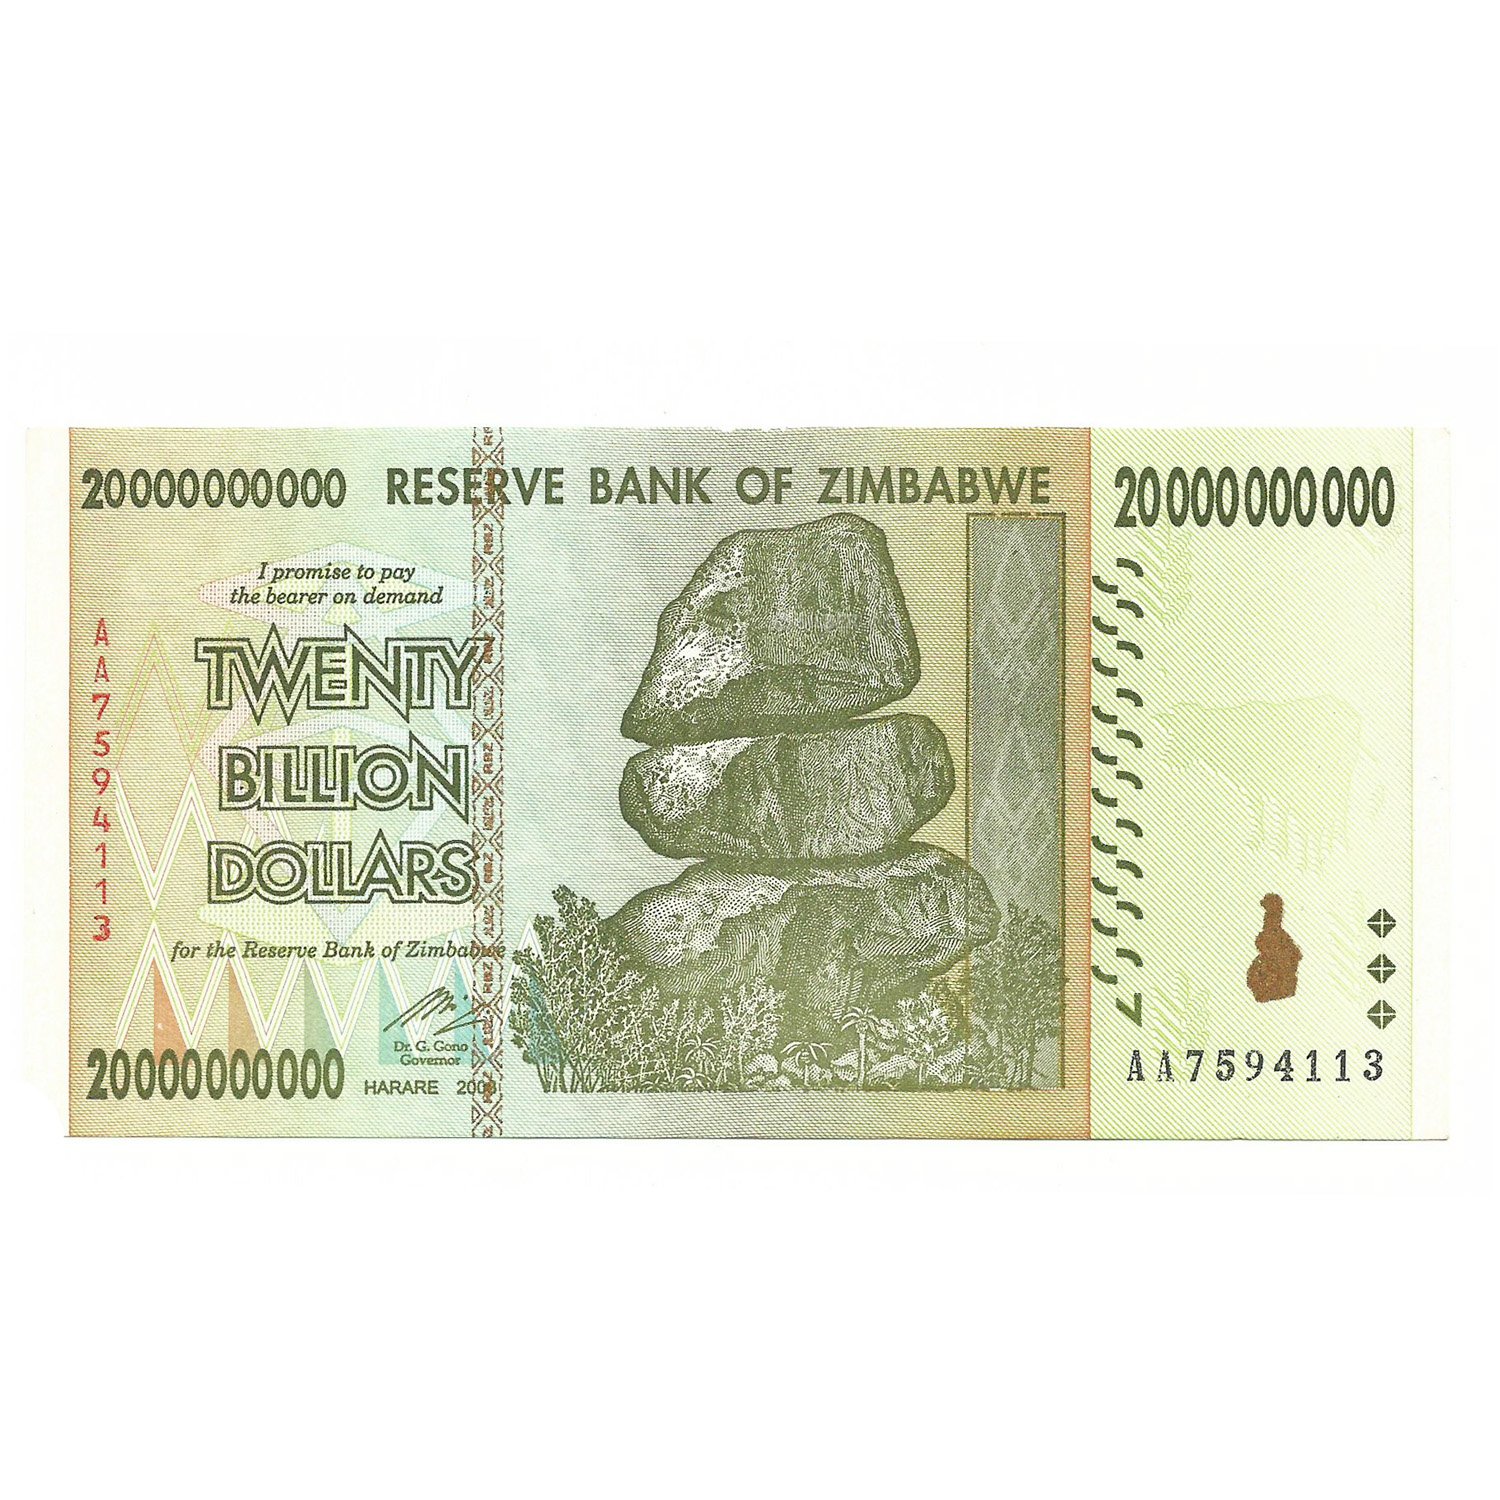 2008 долларов в рублях. 500 Триллионов долларов Зимбабве. 20000000000 Долларов. 200 Биллионов долларов Зимбабве. 1000000000 Зимбабвийских долларов.